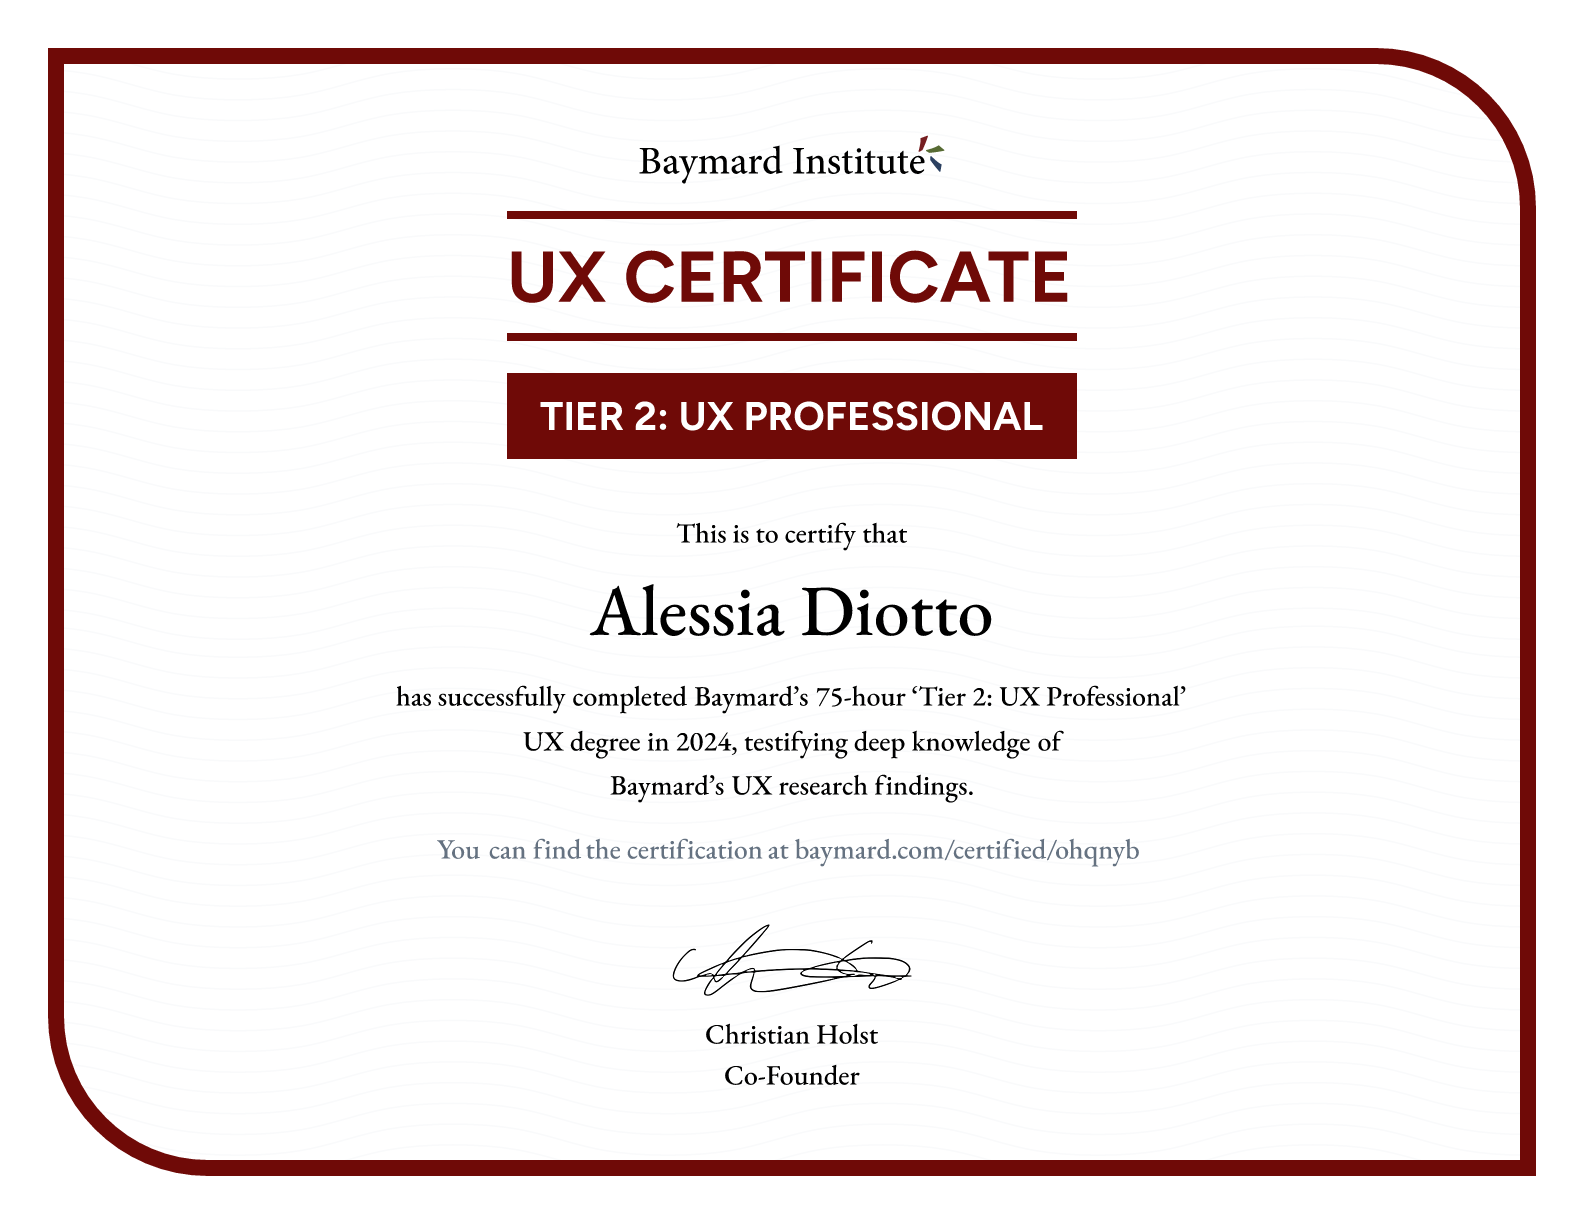 Alessia Diotto’s certificate